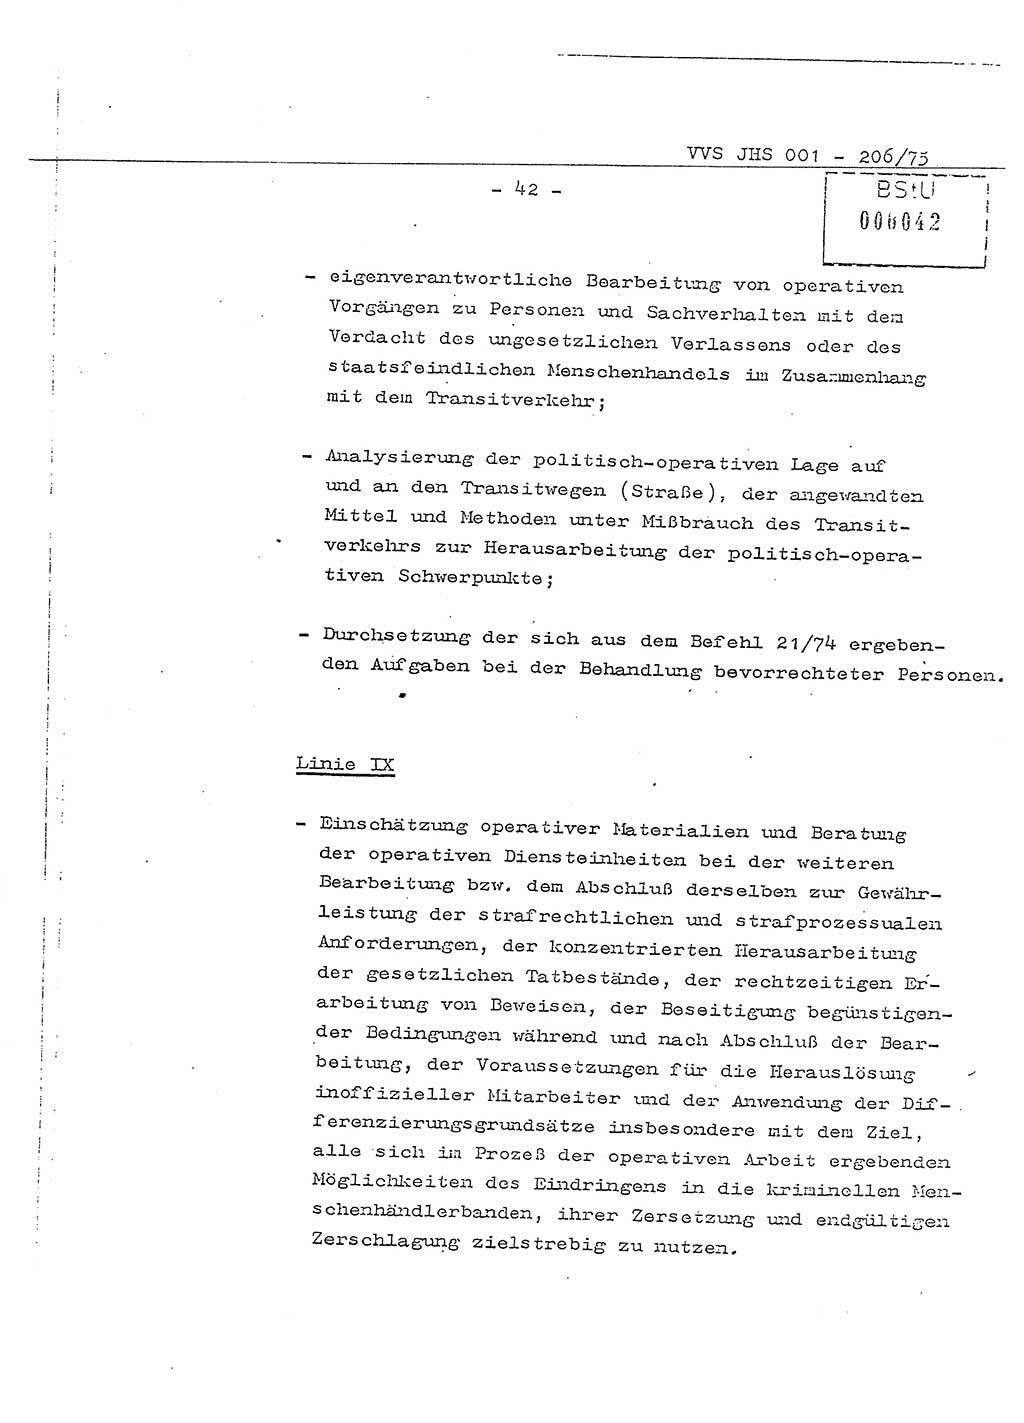 Dissertation Generalmajor Manfred Hummitzsch (Leiter der BV Leipzig), Generalmajor Heinz Fiedler (HA Ⅵ), Oberst Rolf Fister (HA Ⅸ), Ministerium für Staatssicherheit (MfS) [Deutsche Demokratische Republik (DDR)], Juristische Hochschule (JHS), Vertrauliche Verschlußsache (VVS) 001-206/75, Potsdam 1975, Seite 42 (Diss. MfS DDR JHS VVS 001-206/75 1975, S. 42)